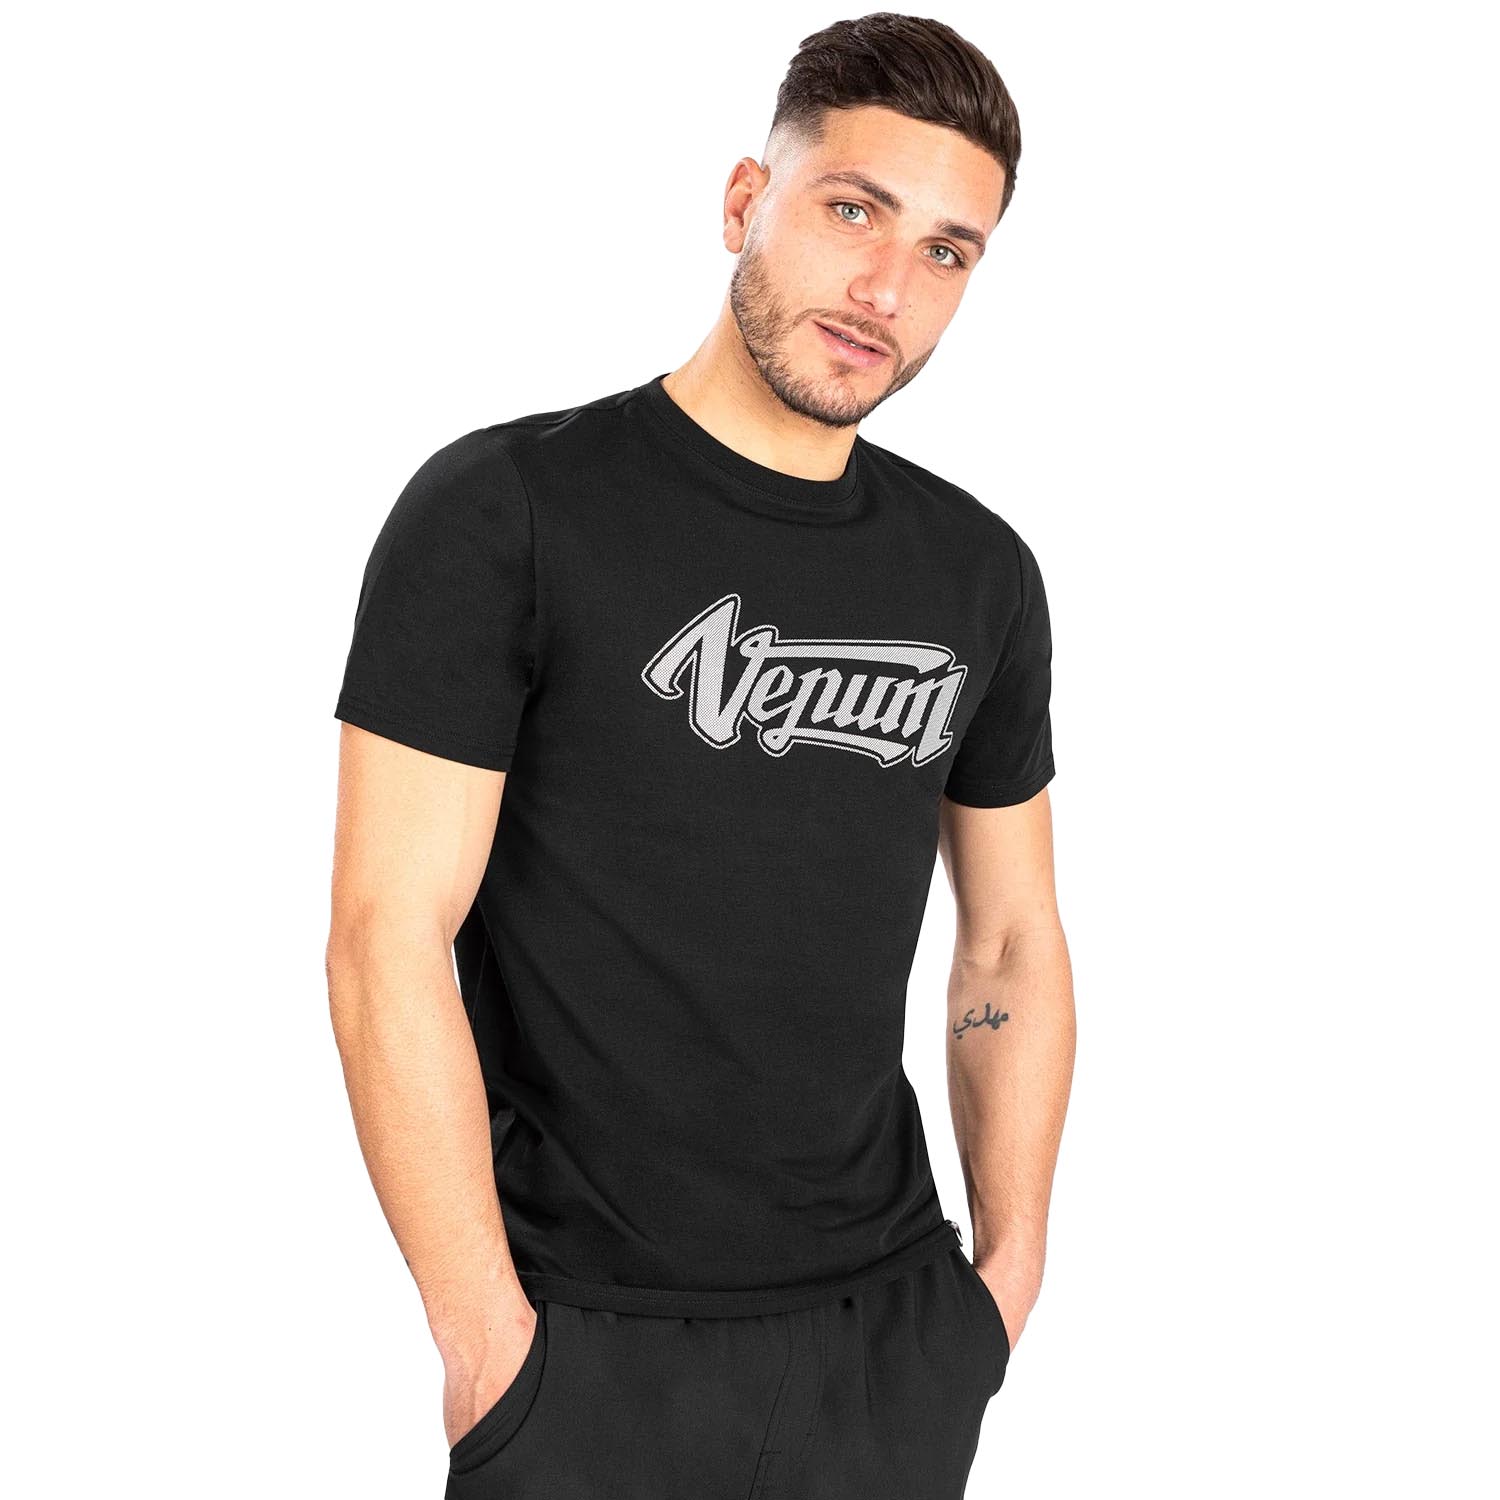 VENUM T-Shirt, Absolute 2.0, black-silver